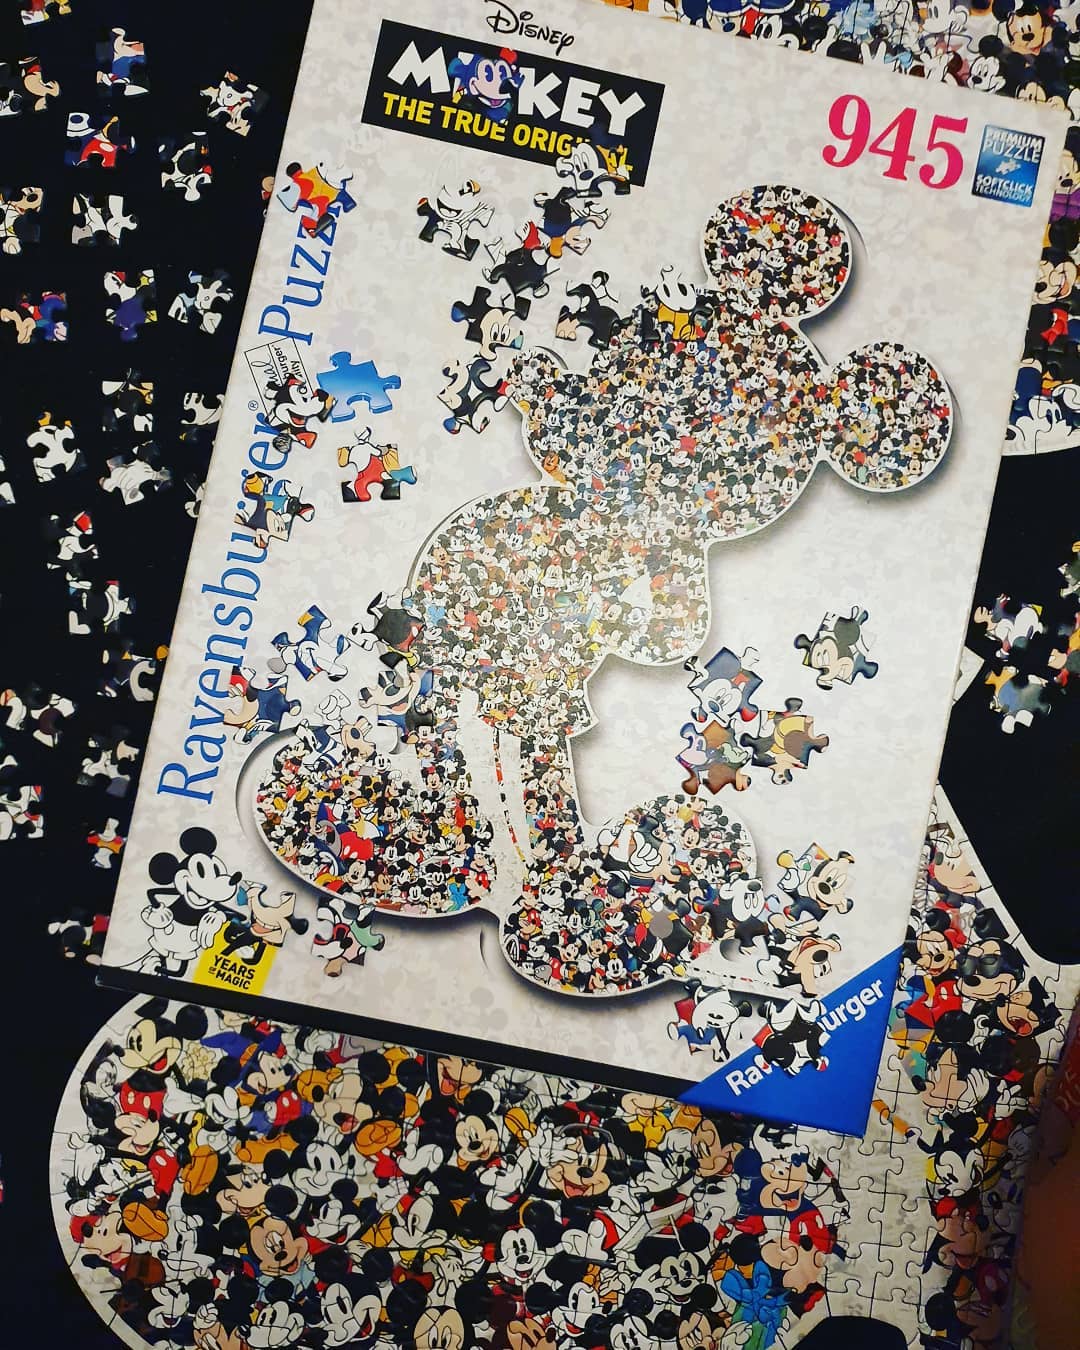 Was für ein Hobby 😂 ein etwas anderes Puzzle ist gerade im Entstehen

#puzzle
#disney
#disneypuzzle
#mickeymouse
@ravensburgerglobal 
#hobbypuzzle